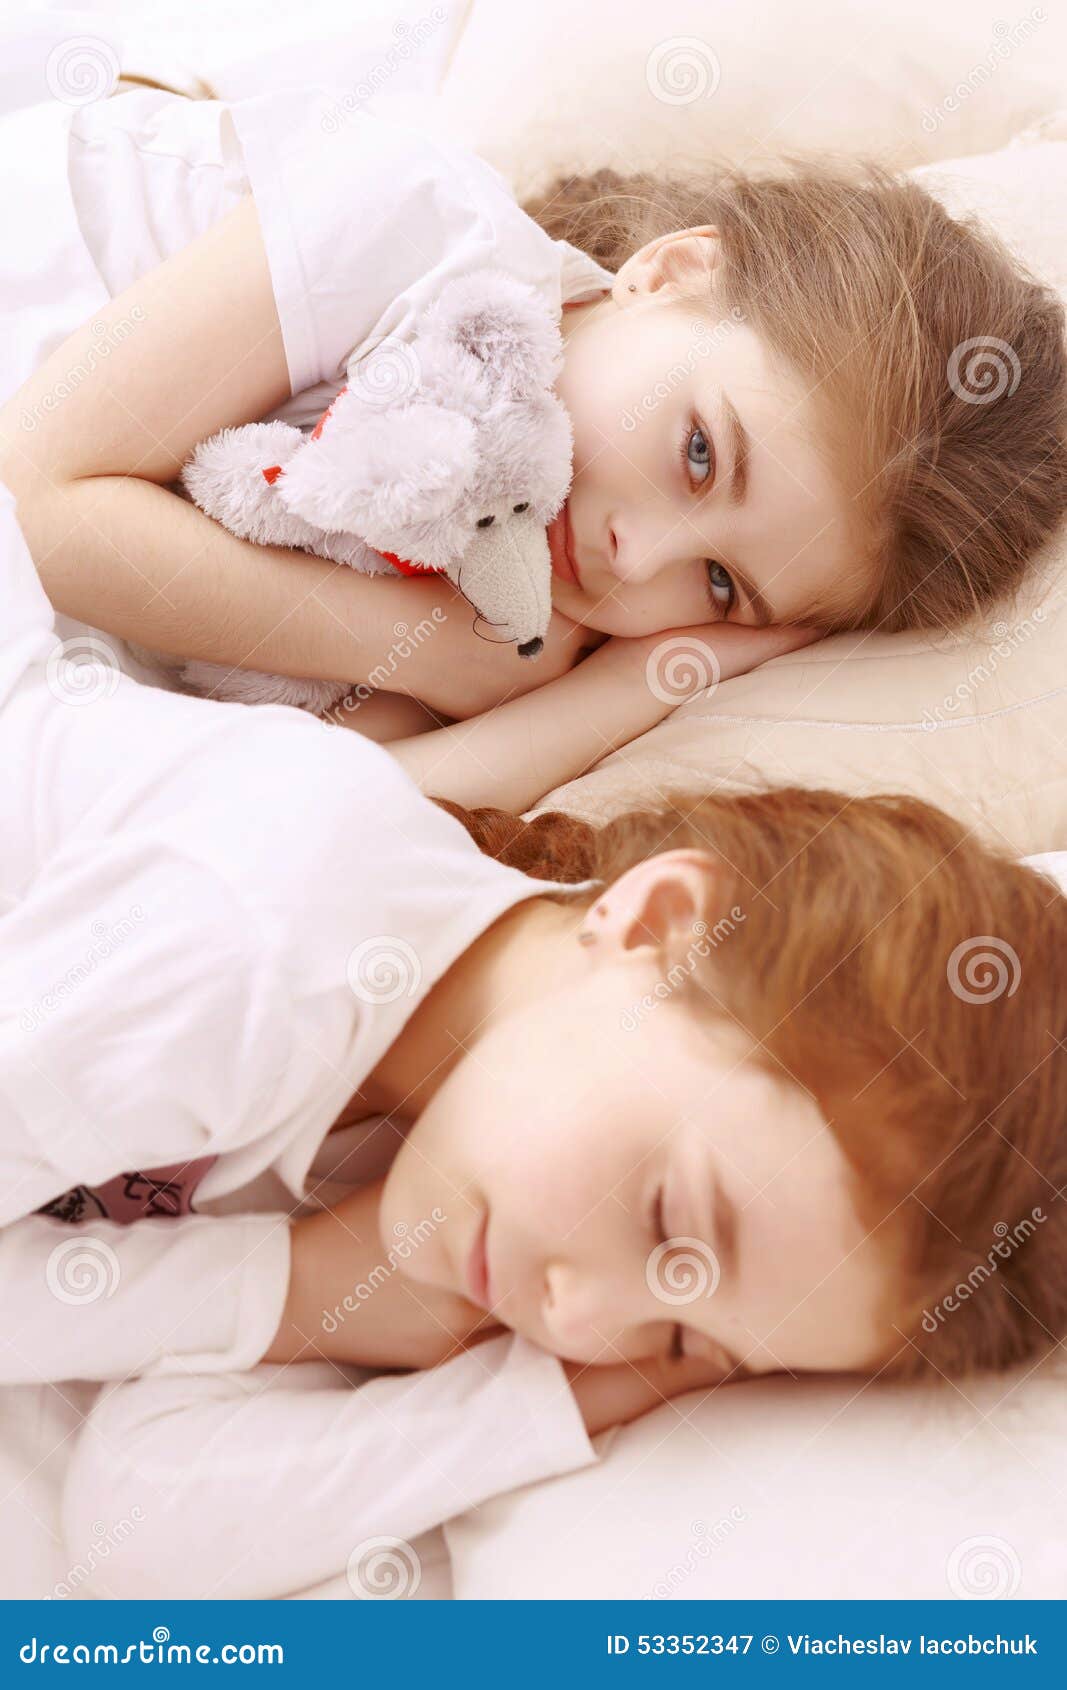 Спал с сестрой друга. Две девочки спят. Две сестры спят. Спящие мвоенькие девоч.